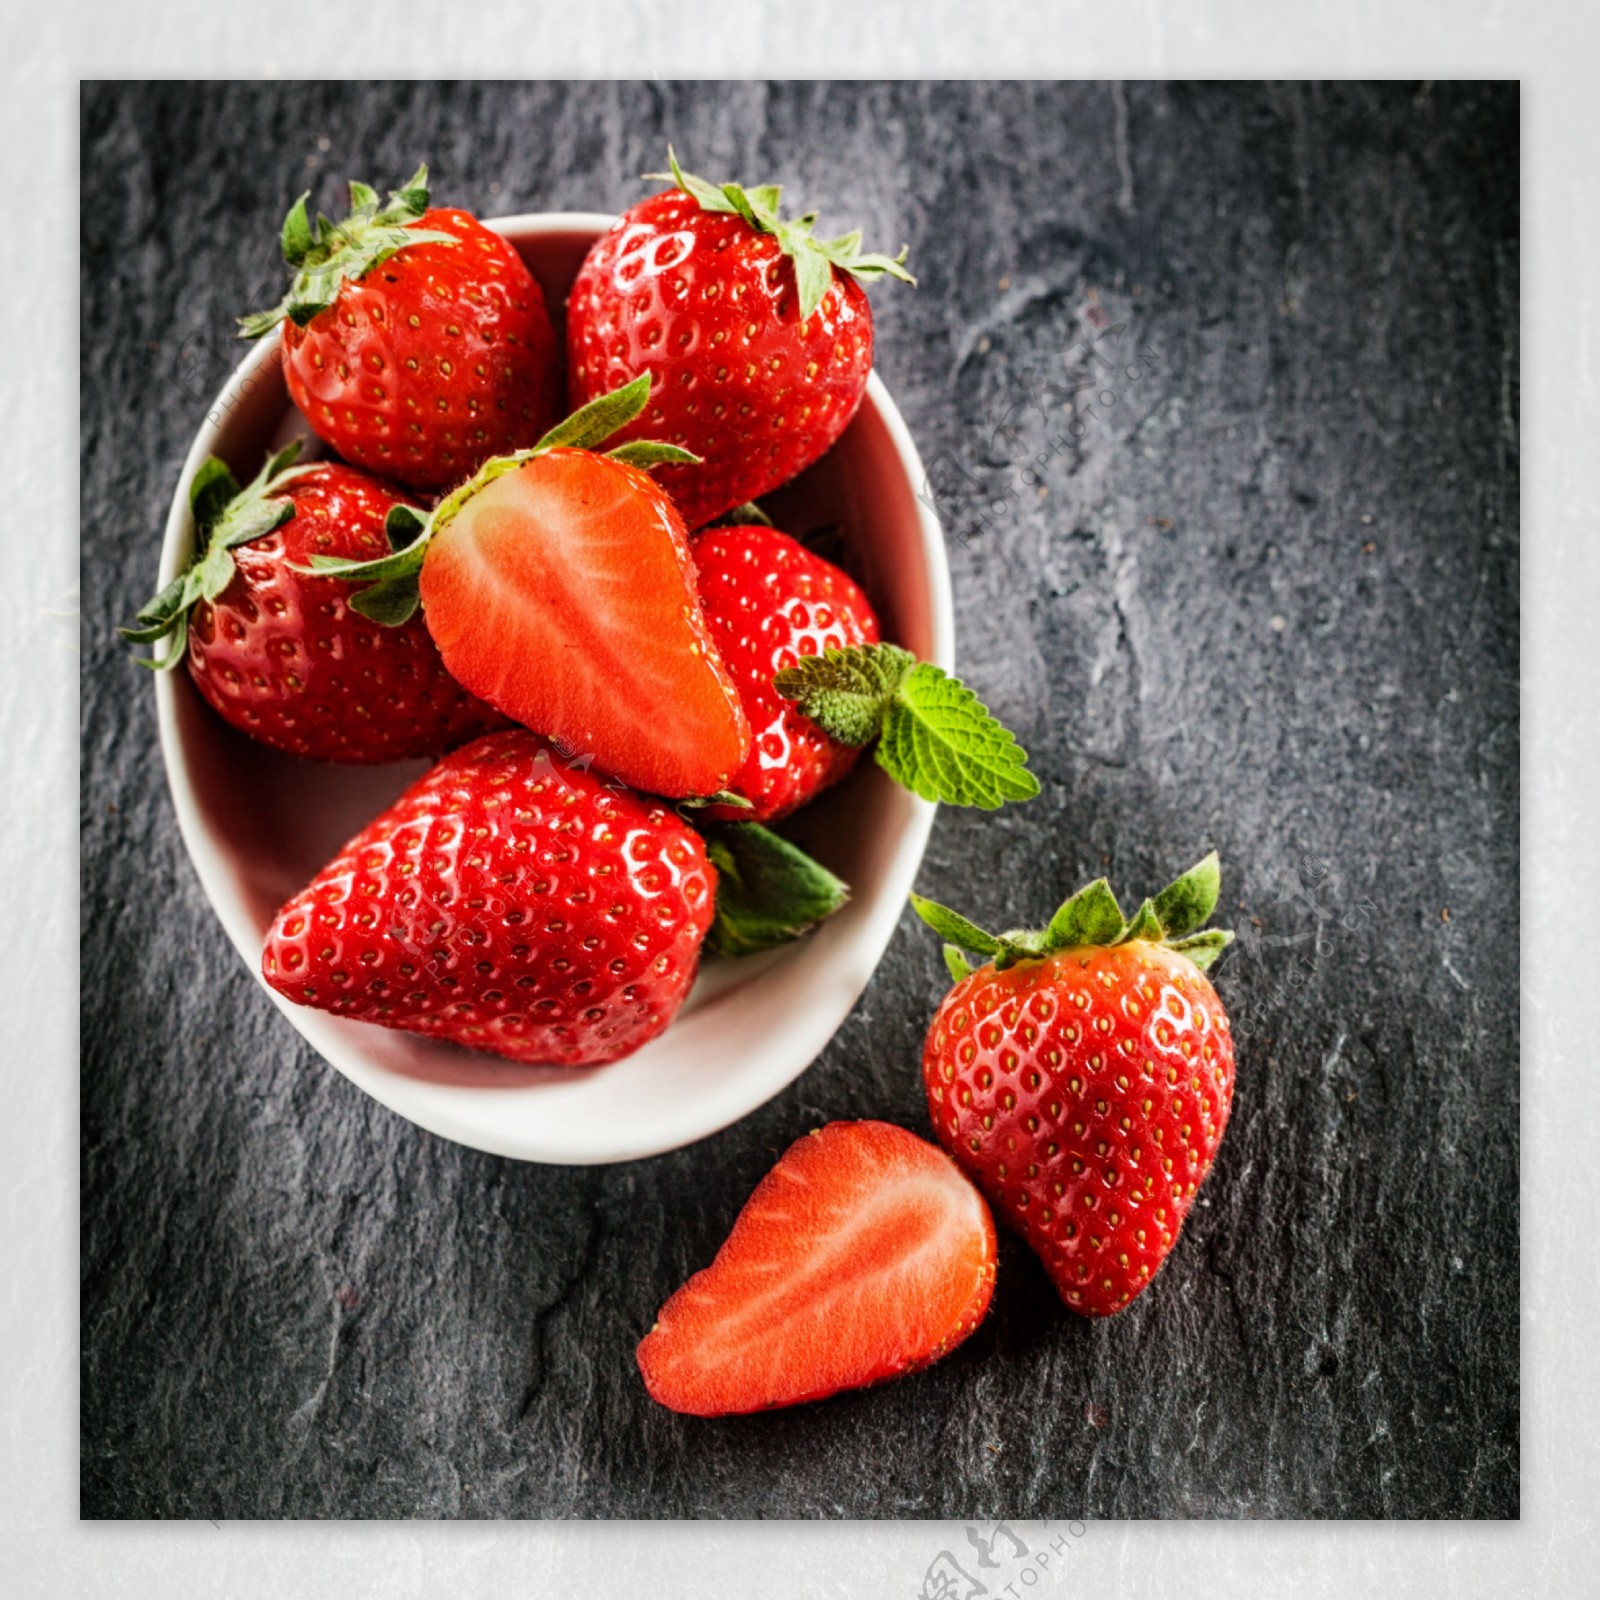 新鲜草莓果实